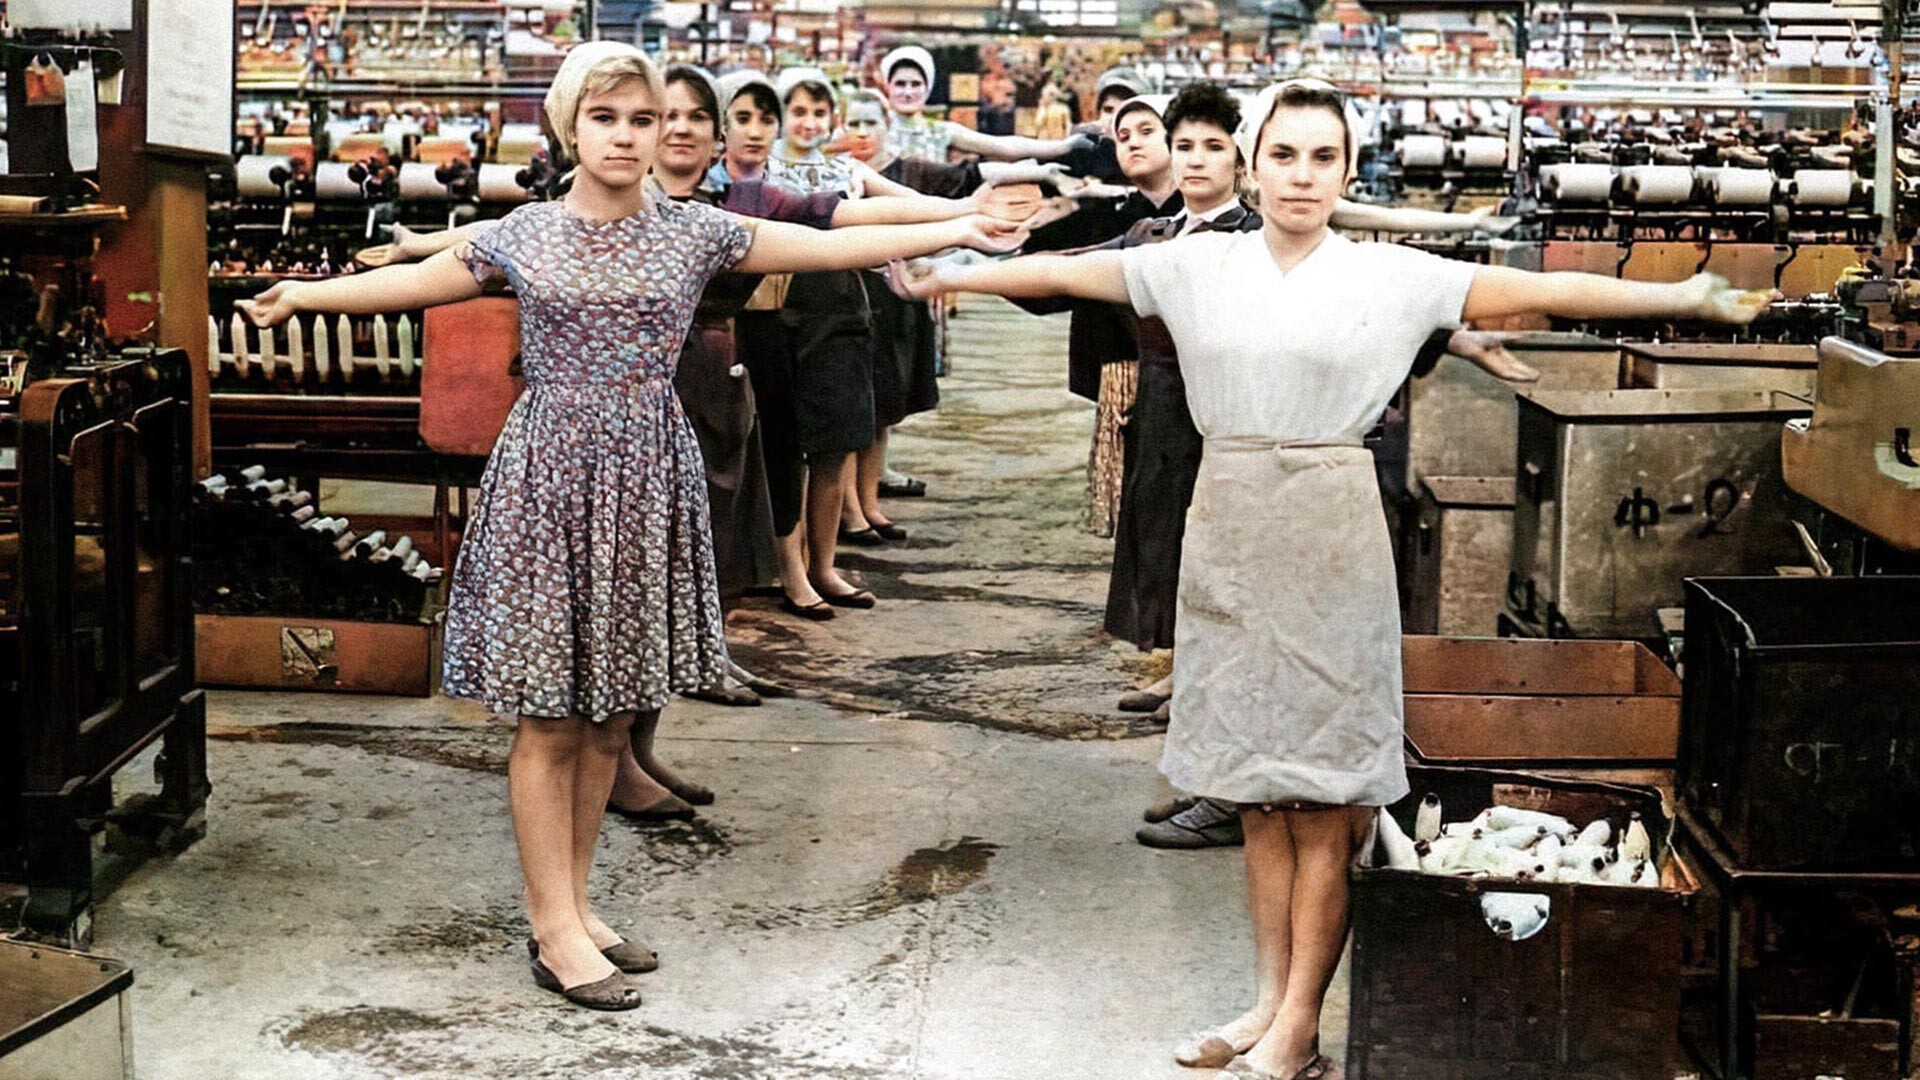 Jam latihan kebugaran di sebuah pabrik tekstil, 1960-an.